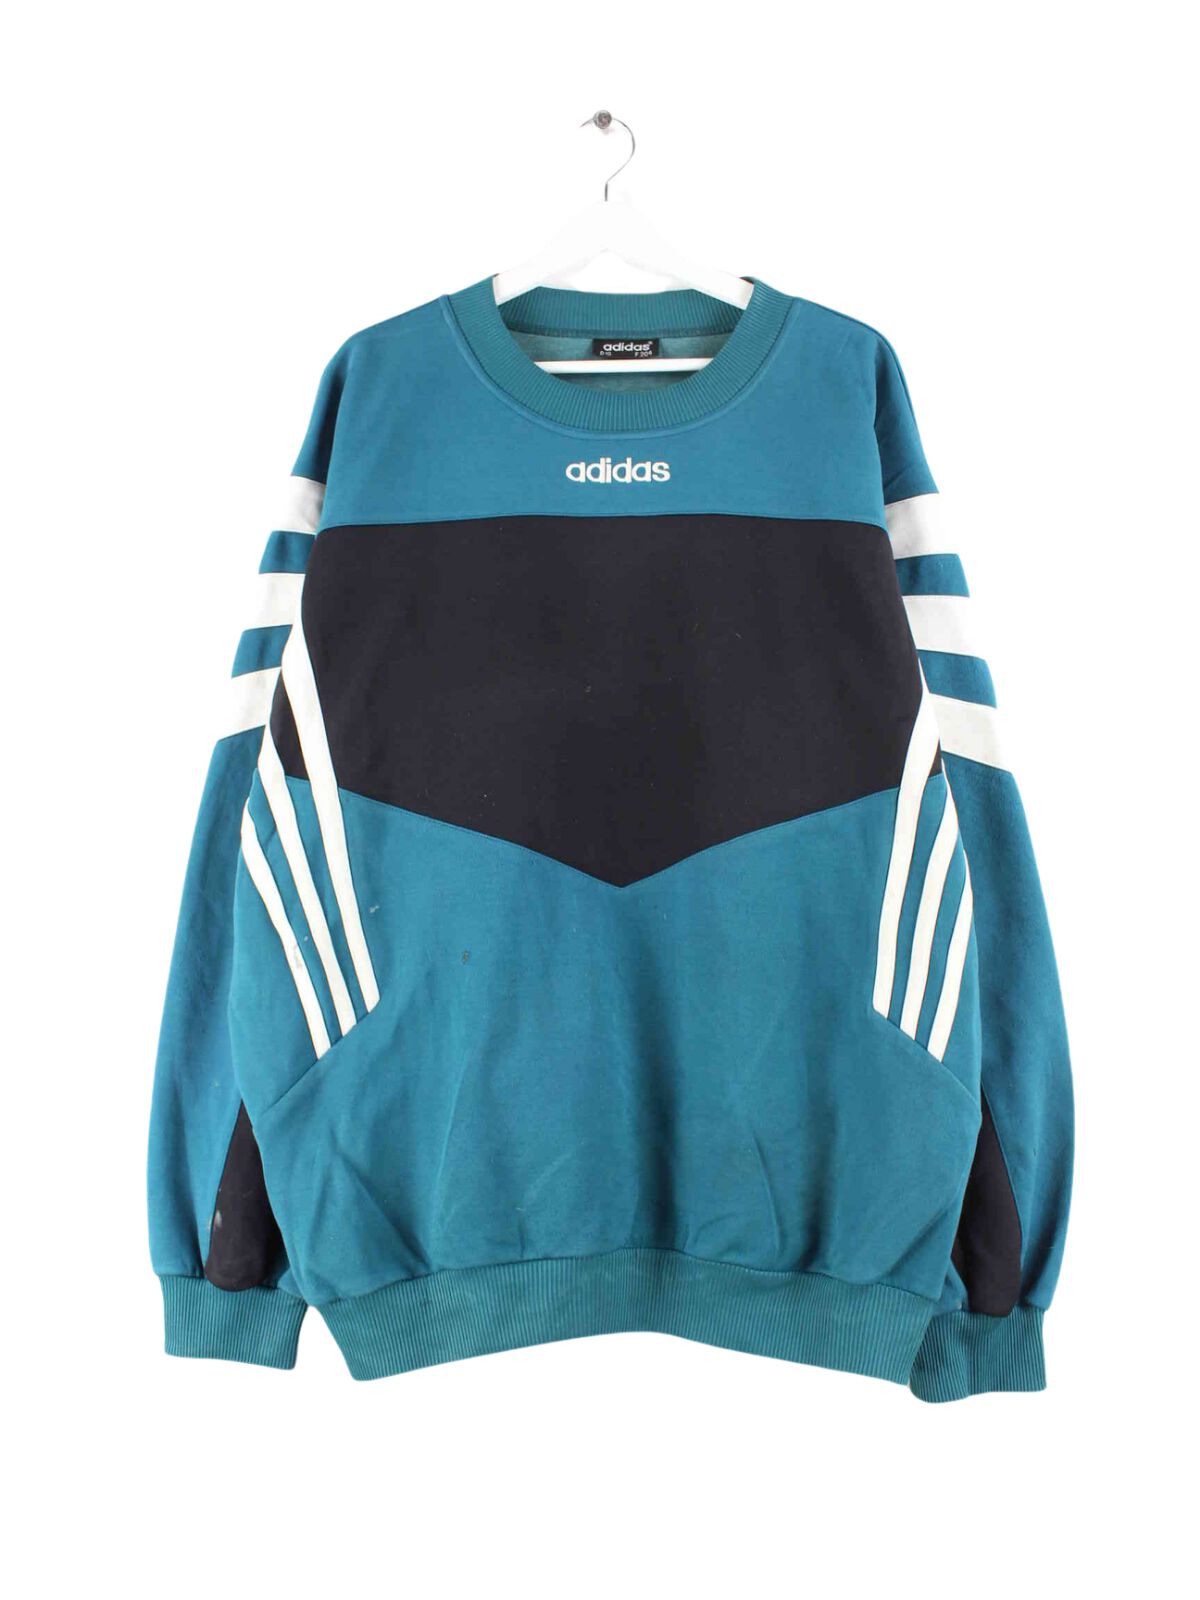 Adidas 90s Vintage Embroidered Sweater Grün XXL